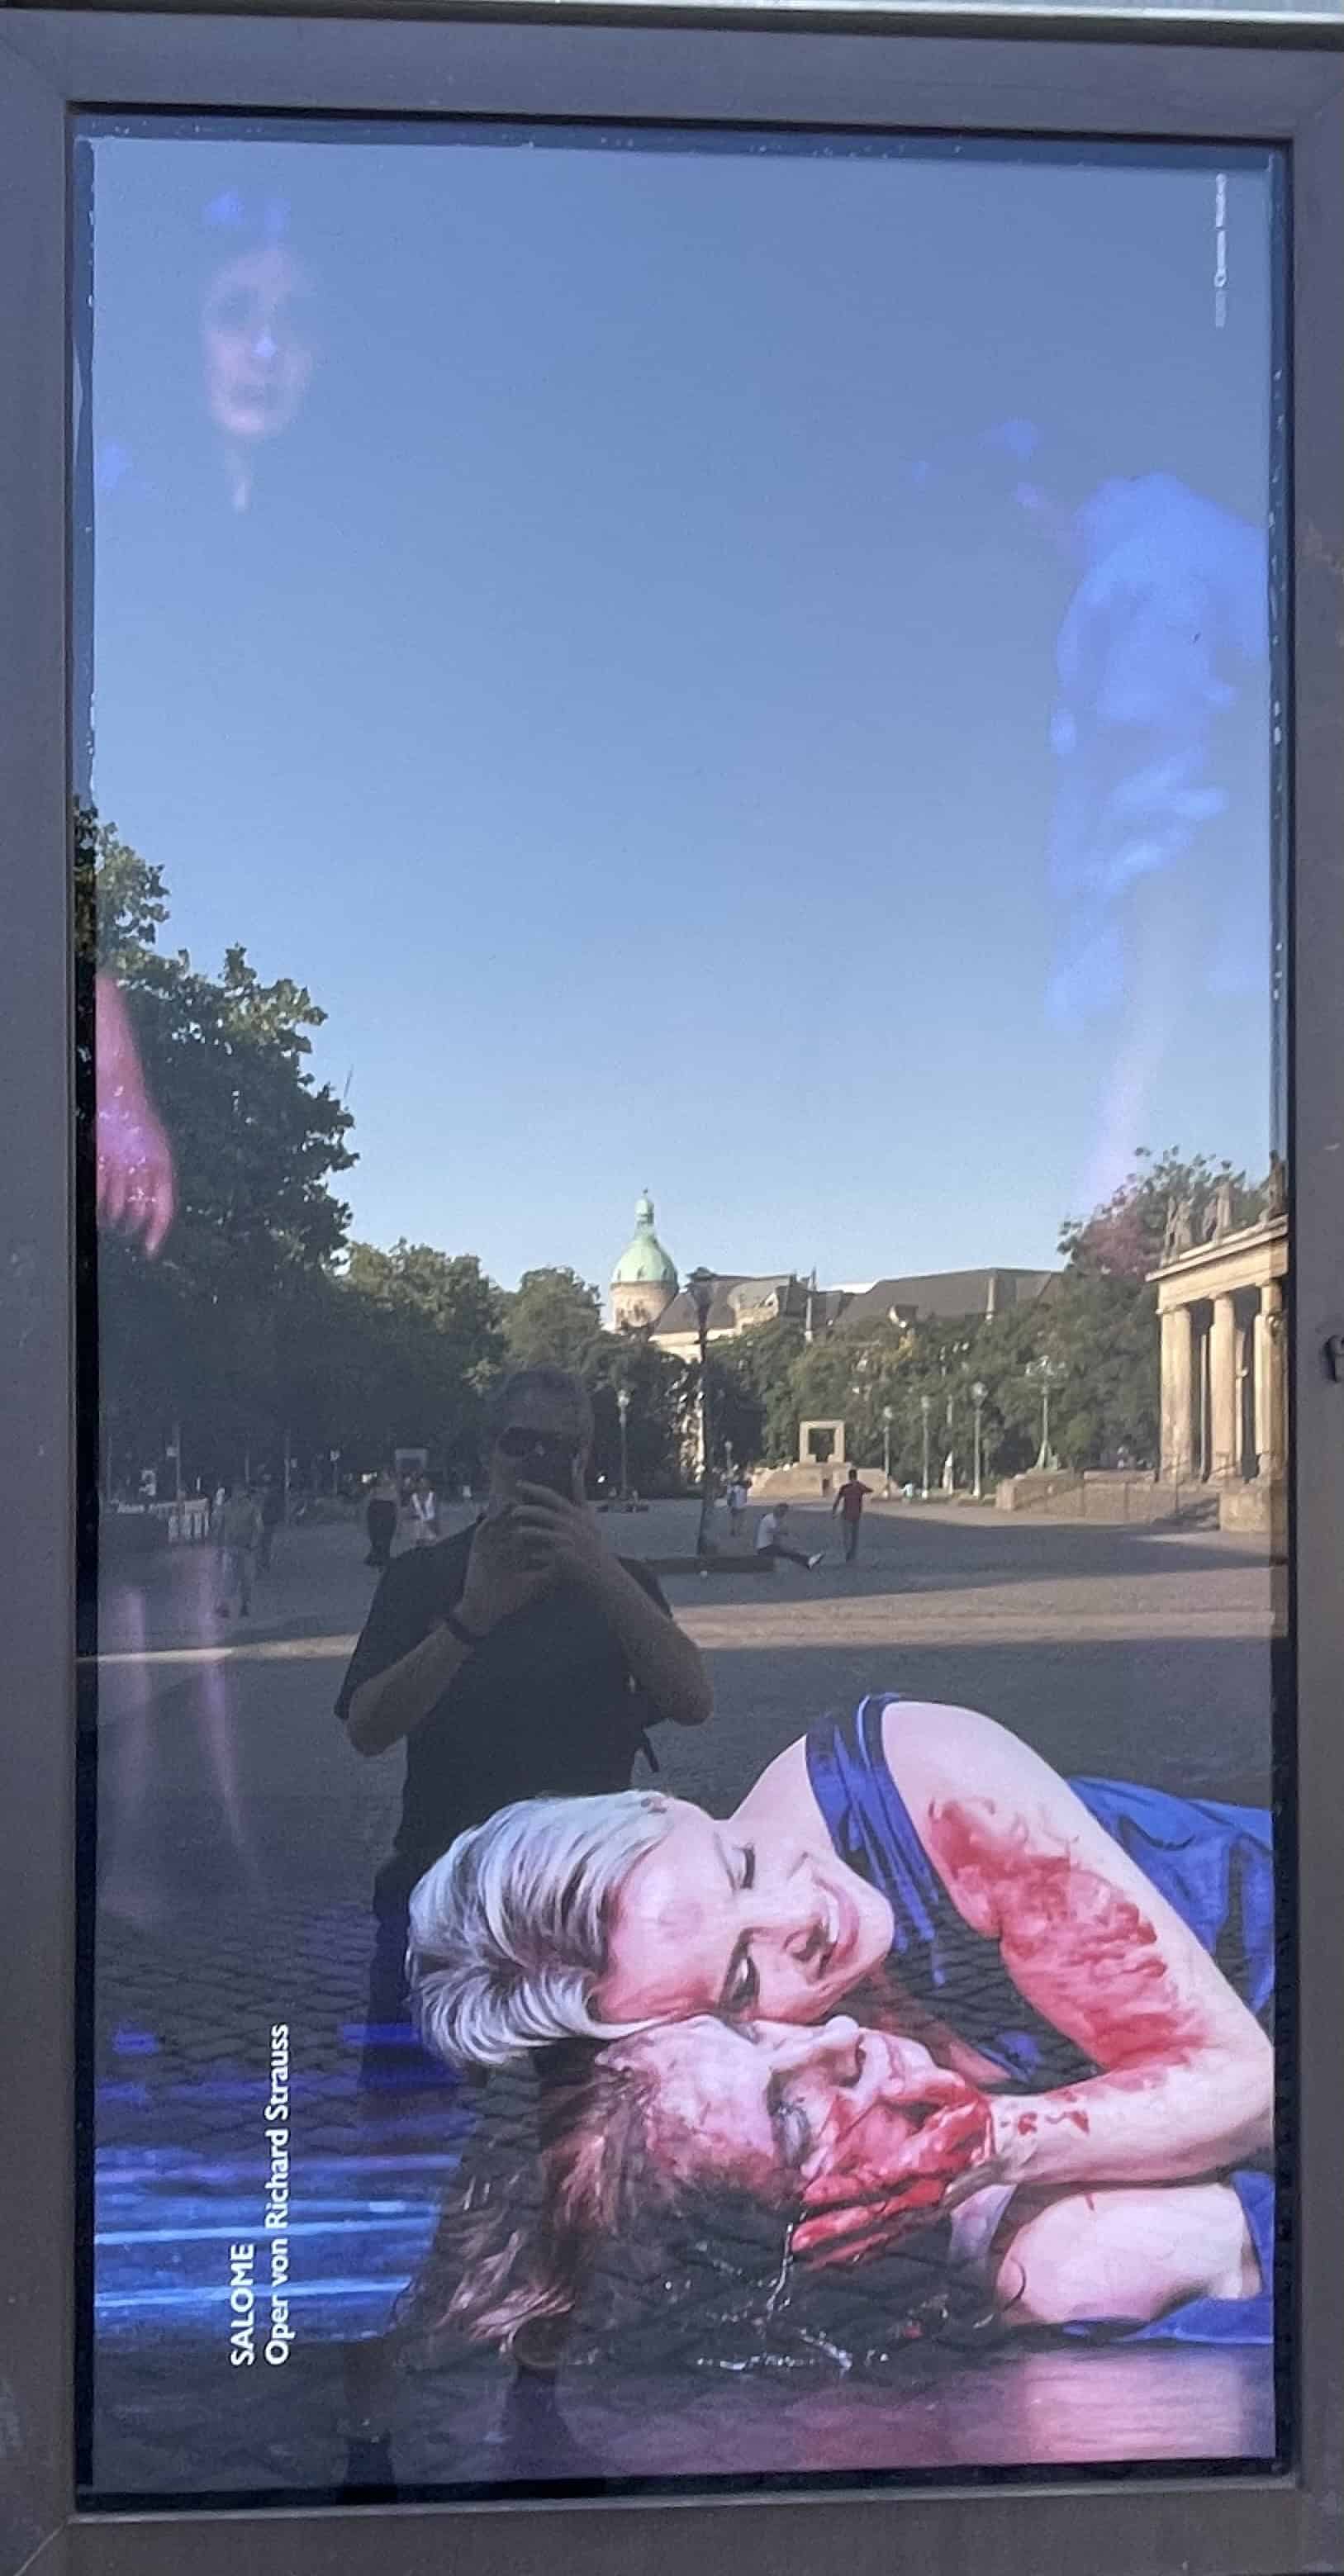 Plakat der Oper Hannover zur Oper Salome mit liegender Salome inklusive blutigem Arm und hält blutigen Kopf einer Person unter sich.